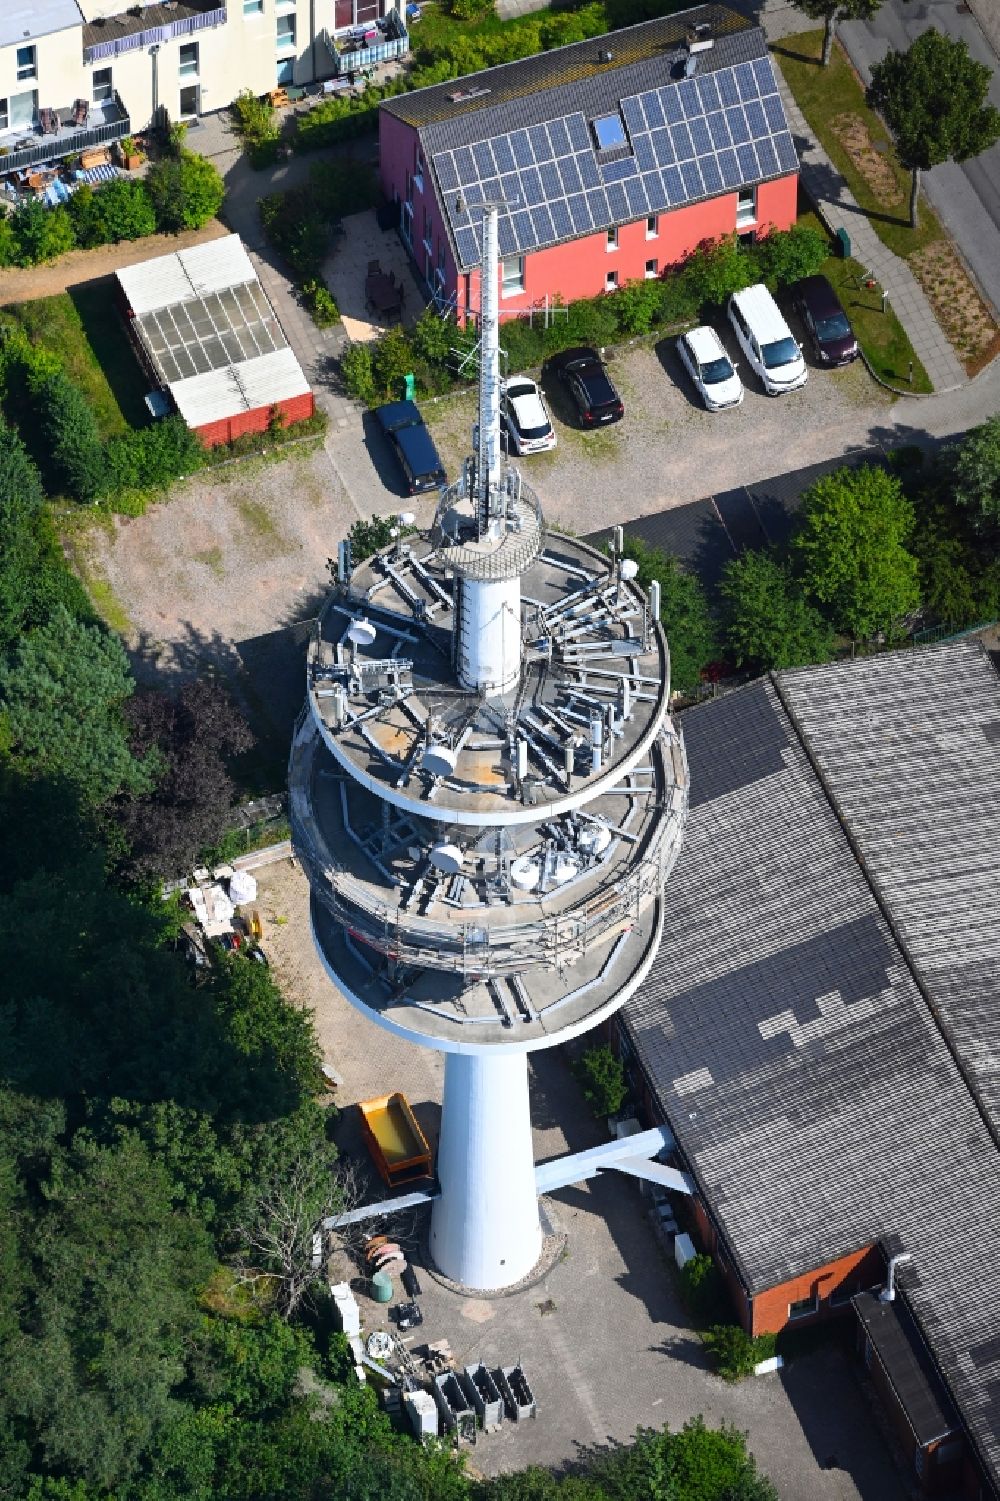 Wyk auf Föhr von oben - Fernmeldeturm und Grundnetzsender in Wyk auf Föhr im Bundesland Schleswig-Holstein, Deutschland